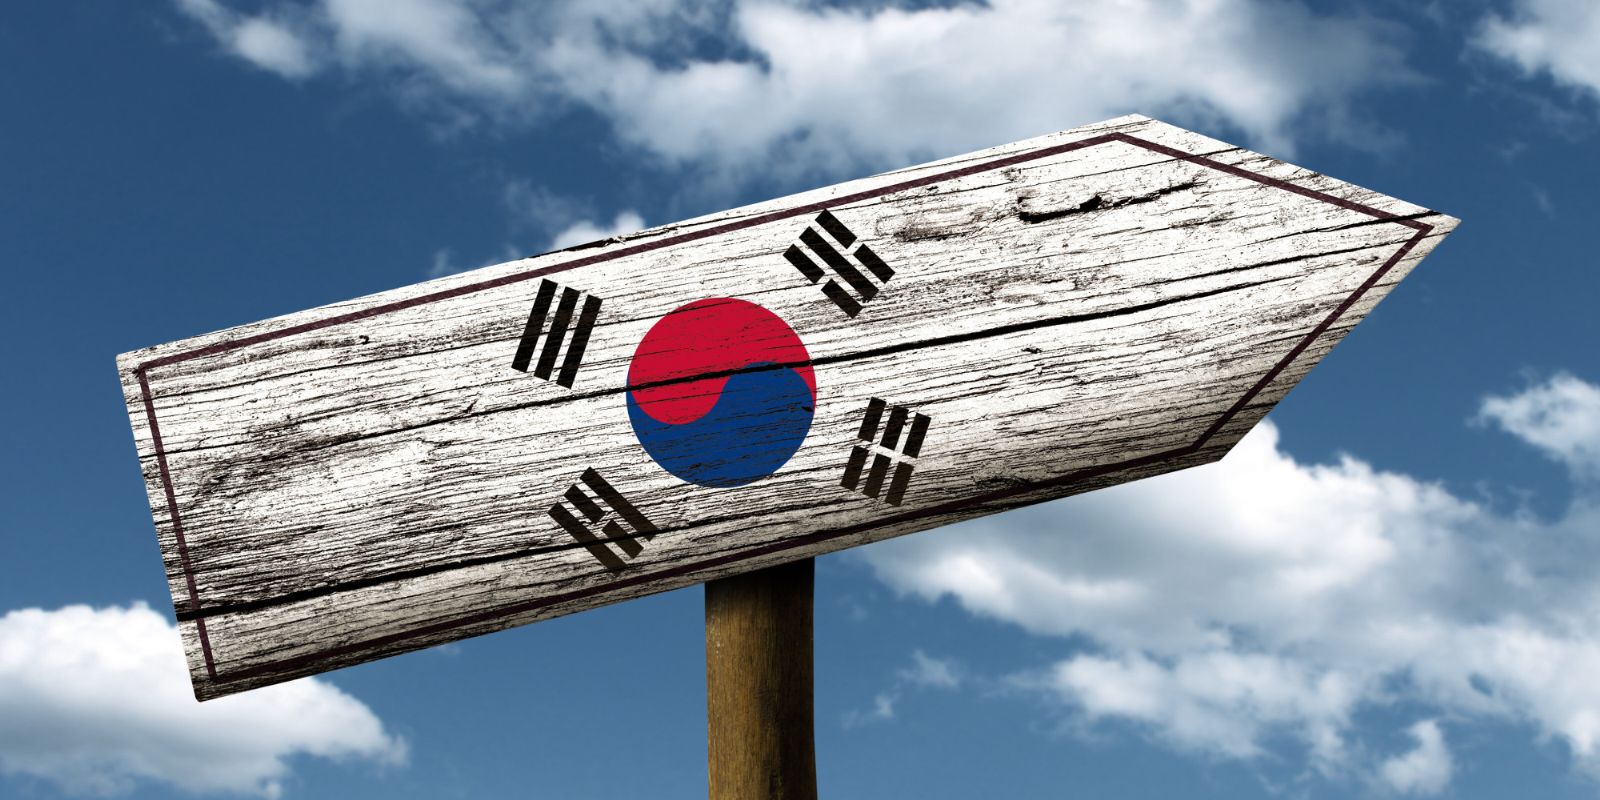 Dịch vụ order, mua hàng hộ tại Hàn Quốc đảm bảo, tiết kiệm